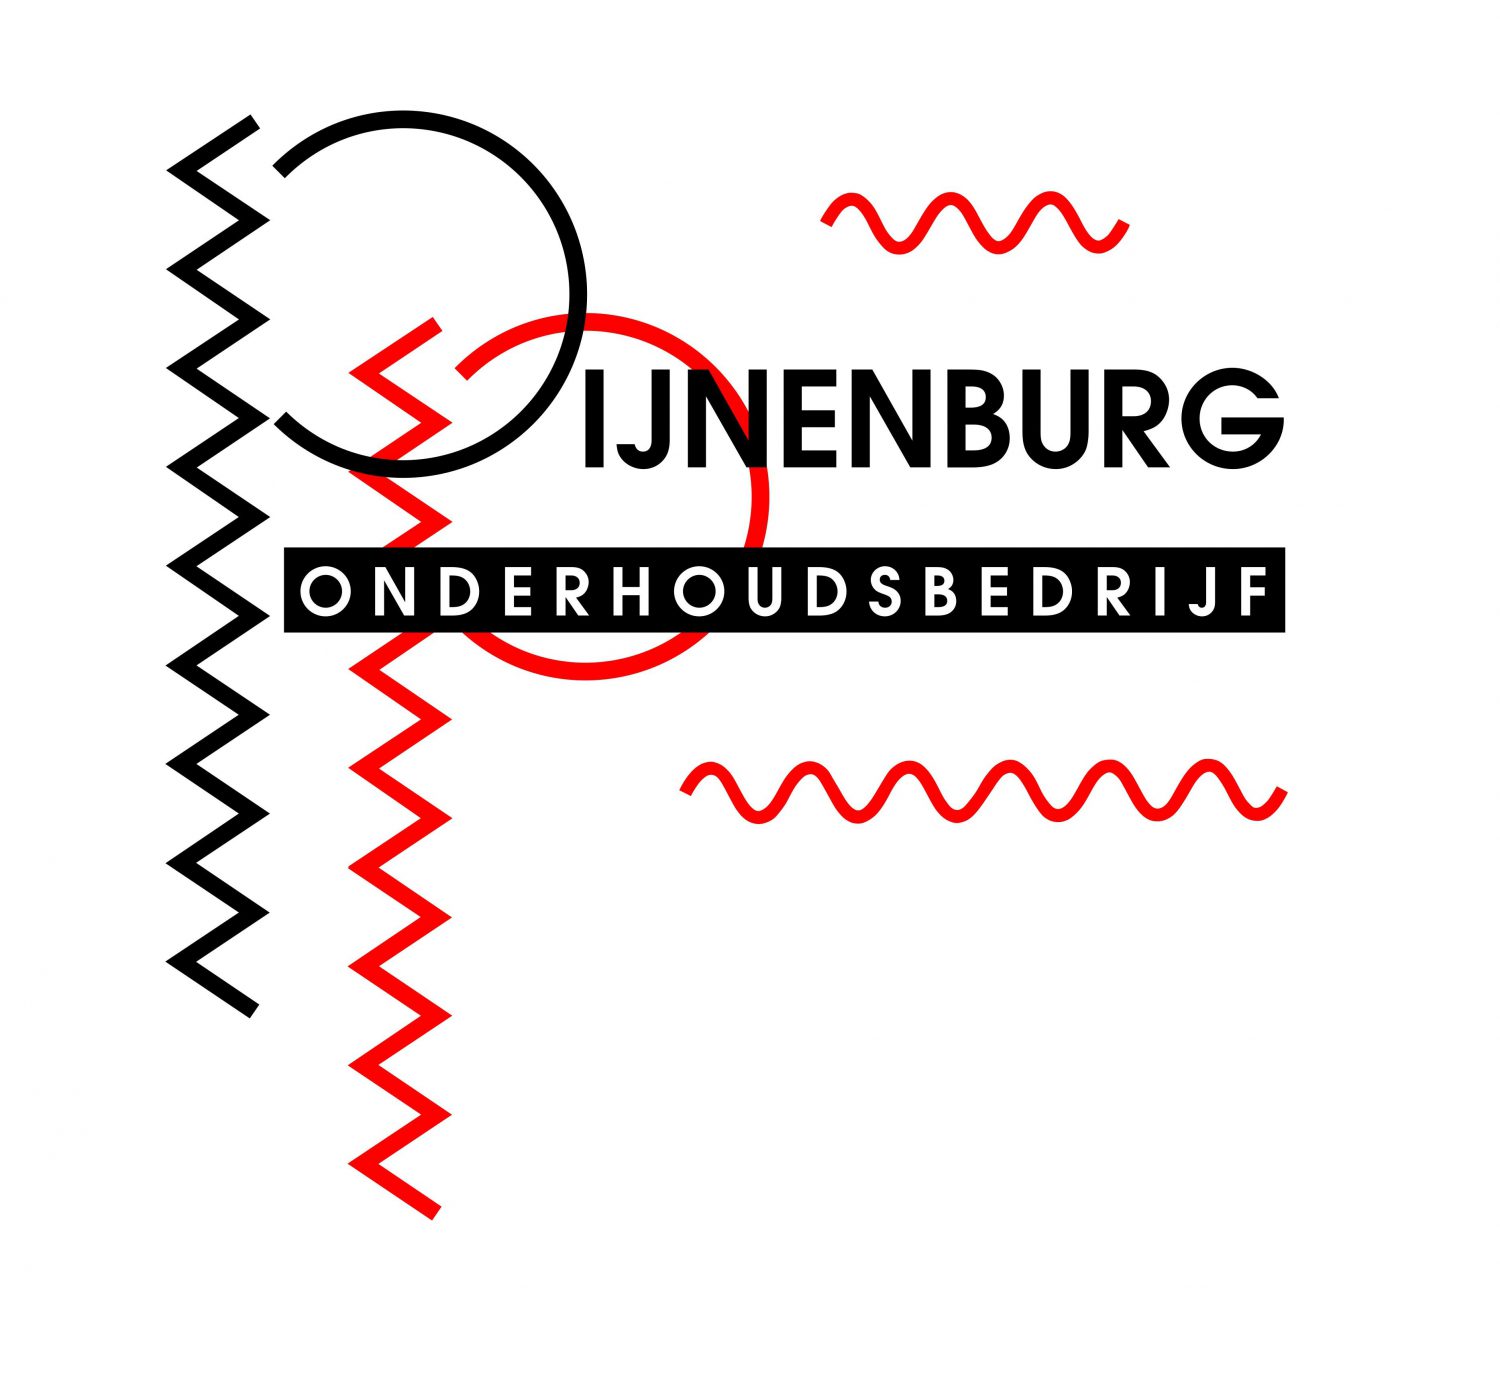 Onderhoudsbedrijf Pijnenburg1